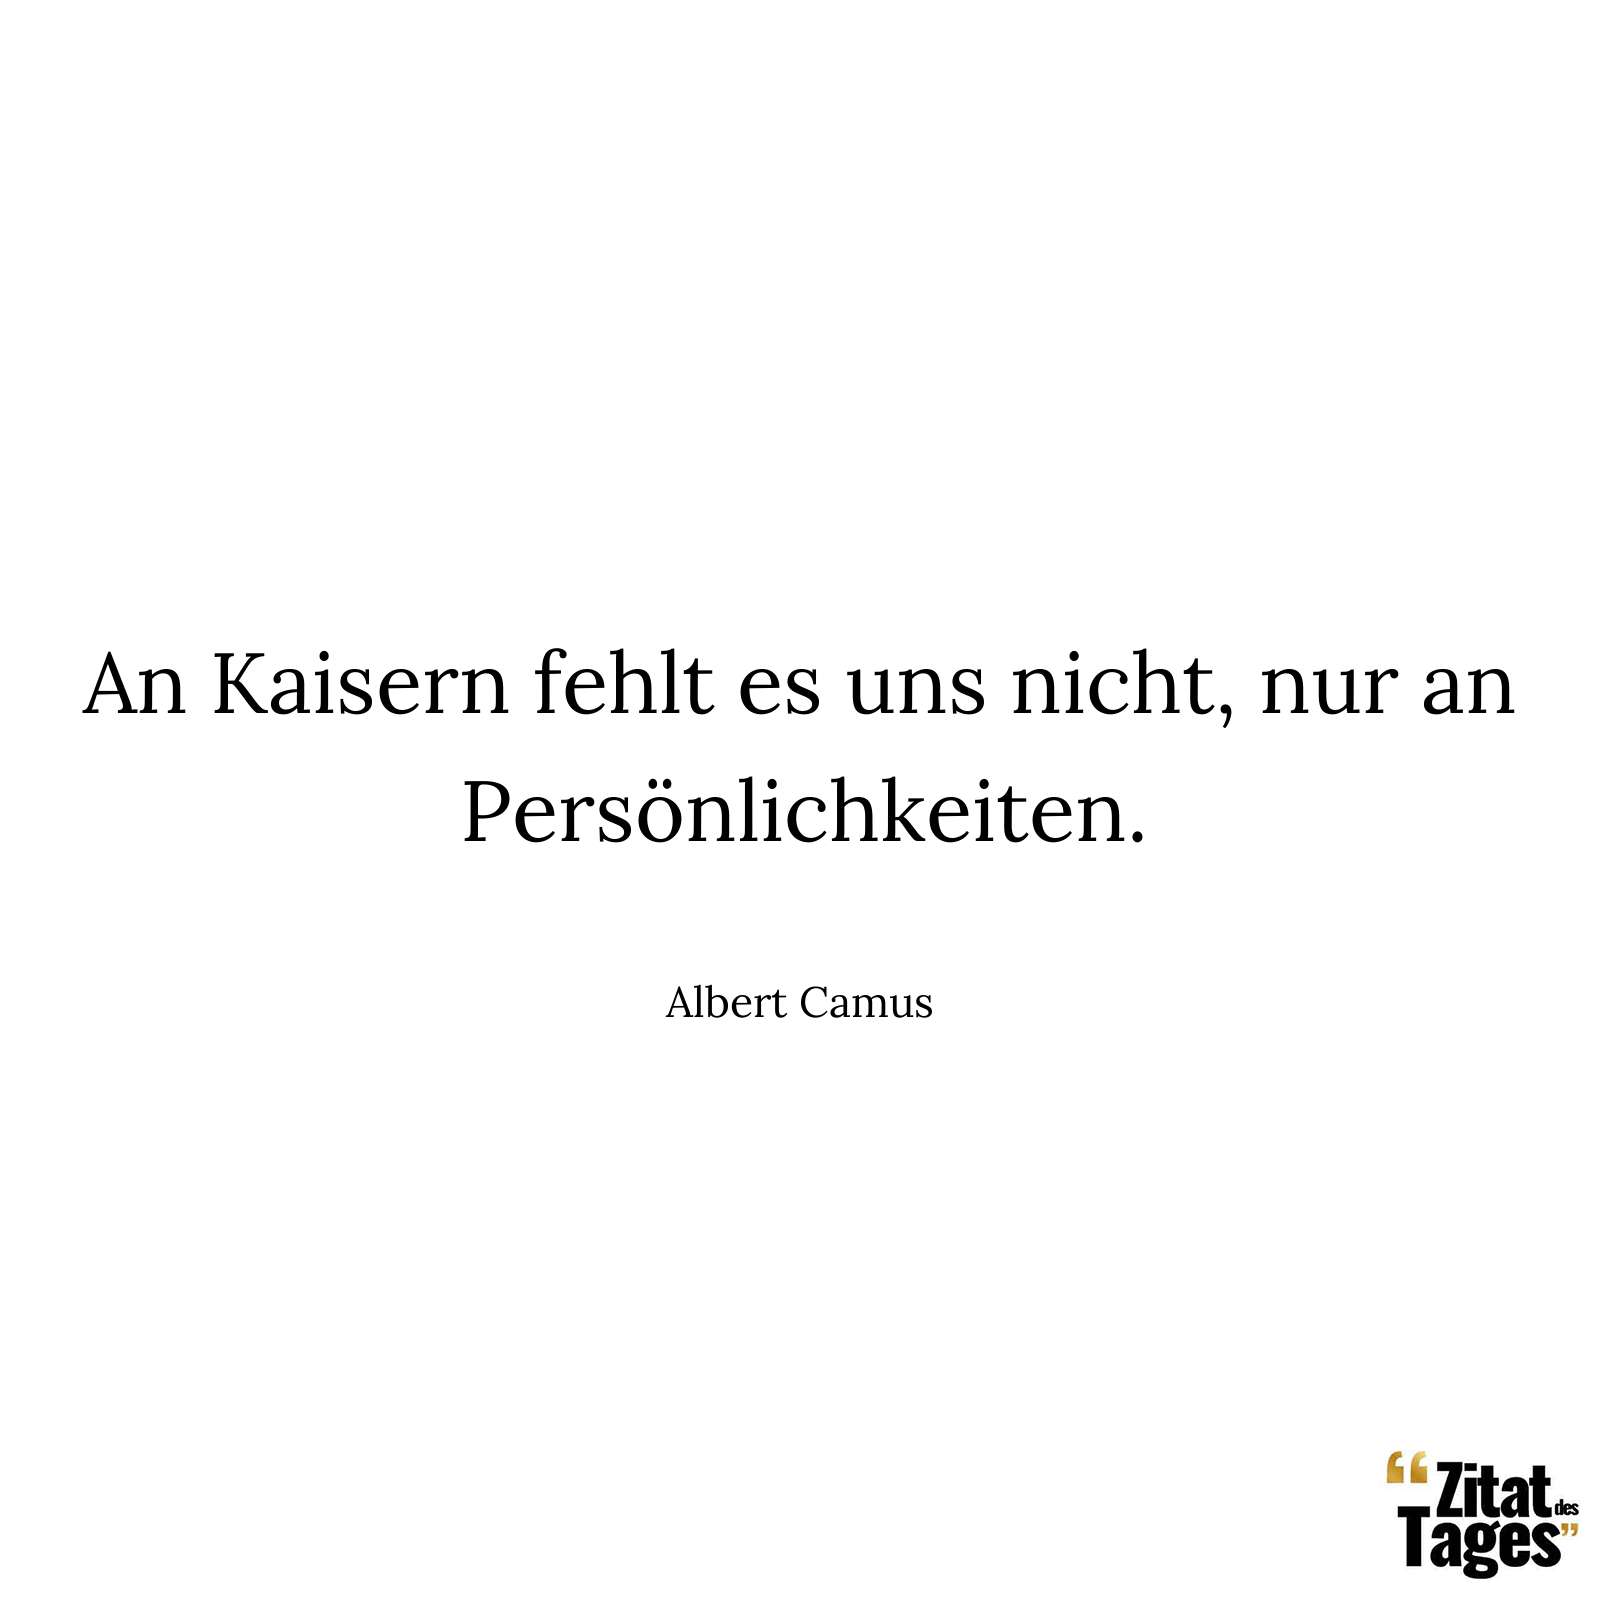 An Kaisern fehlt es uns nicht, nur an Persönlichkeiten. - Albert Camus